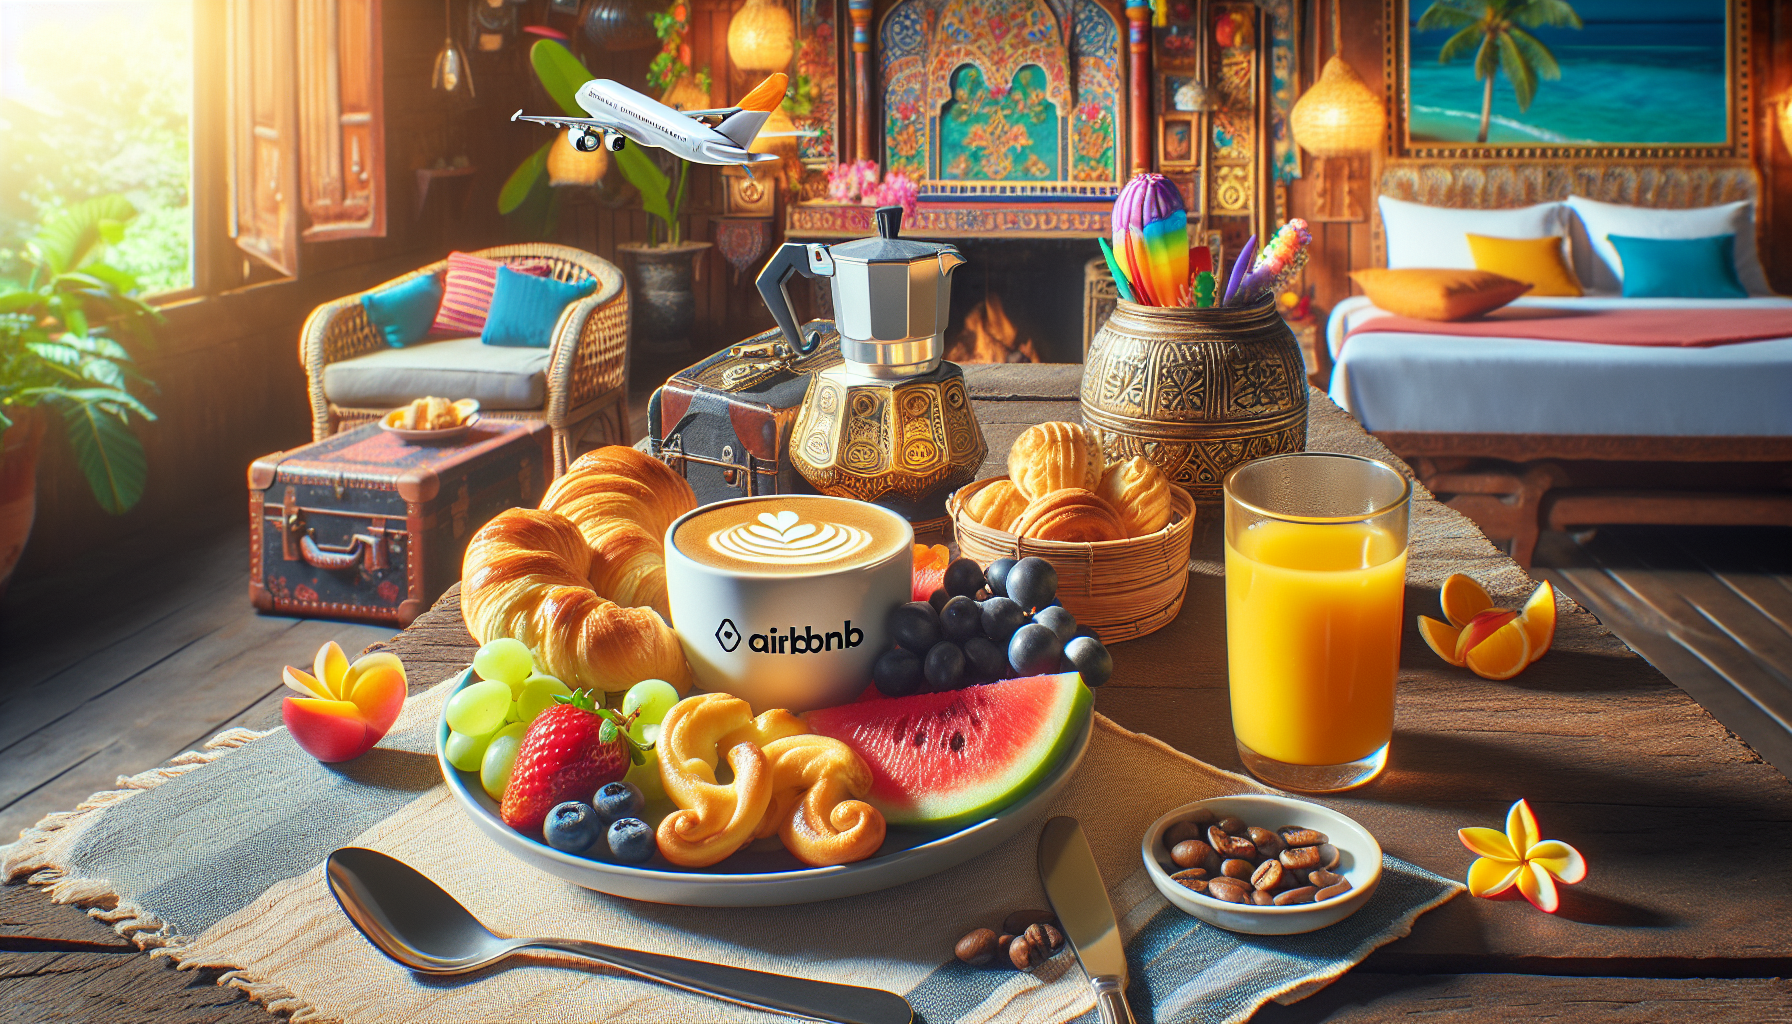 découvrez le petit-déjeuner parfait pour les voyageurs airbnb. des options variées pour bien commencer la journée de vos hôtes. faites-leur vivre une expérience mémorable dès le matin !